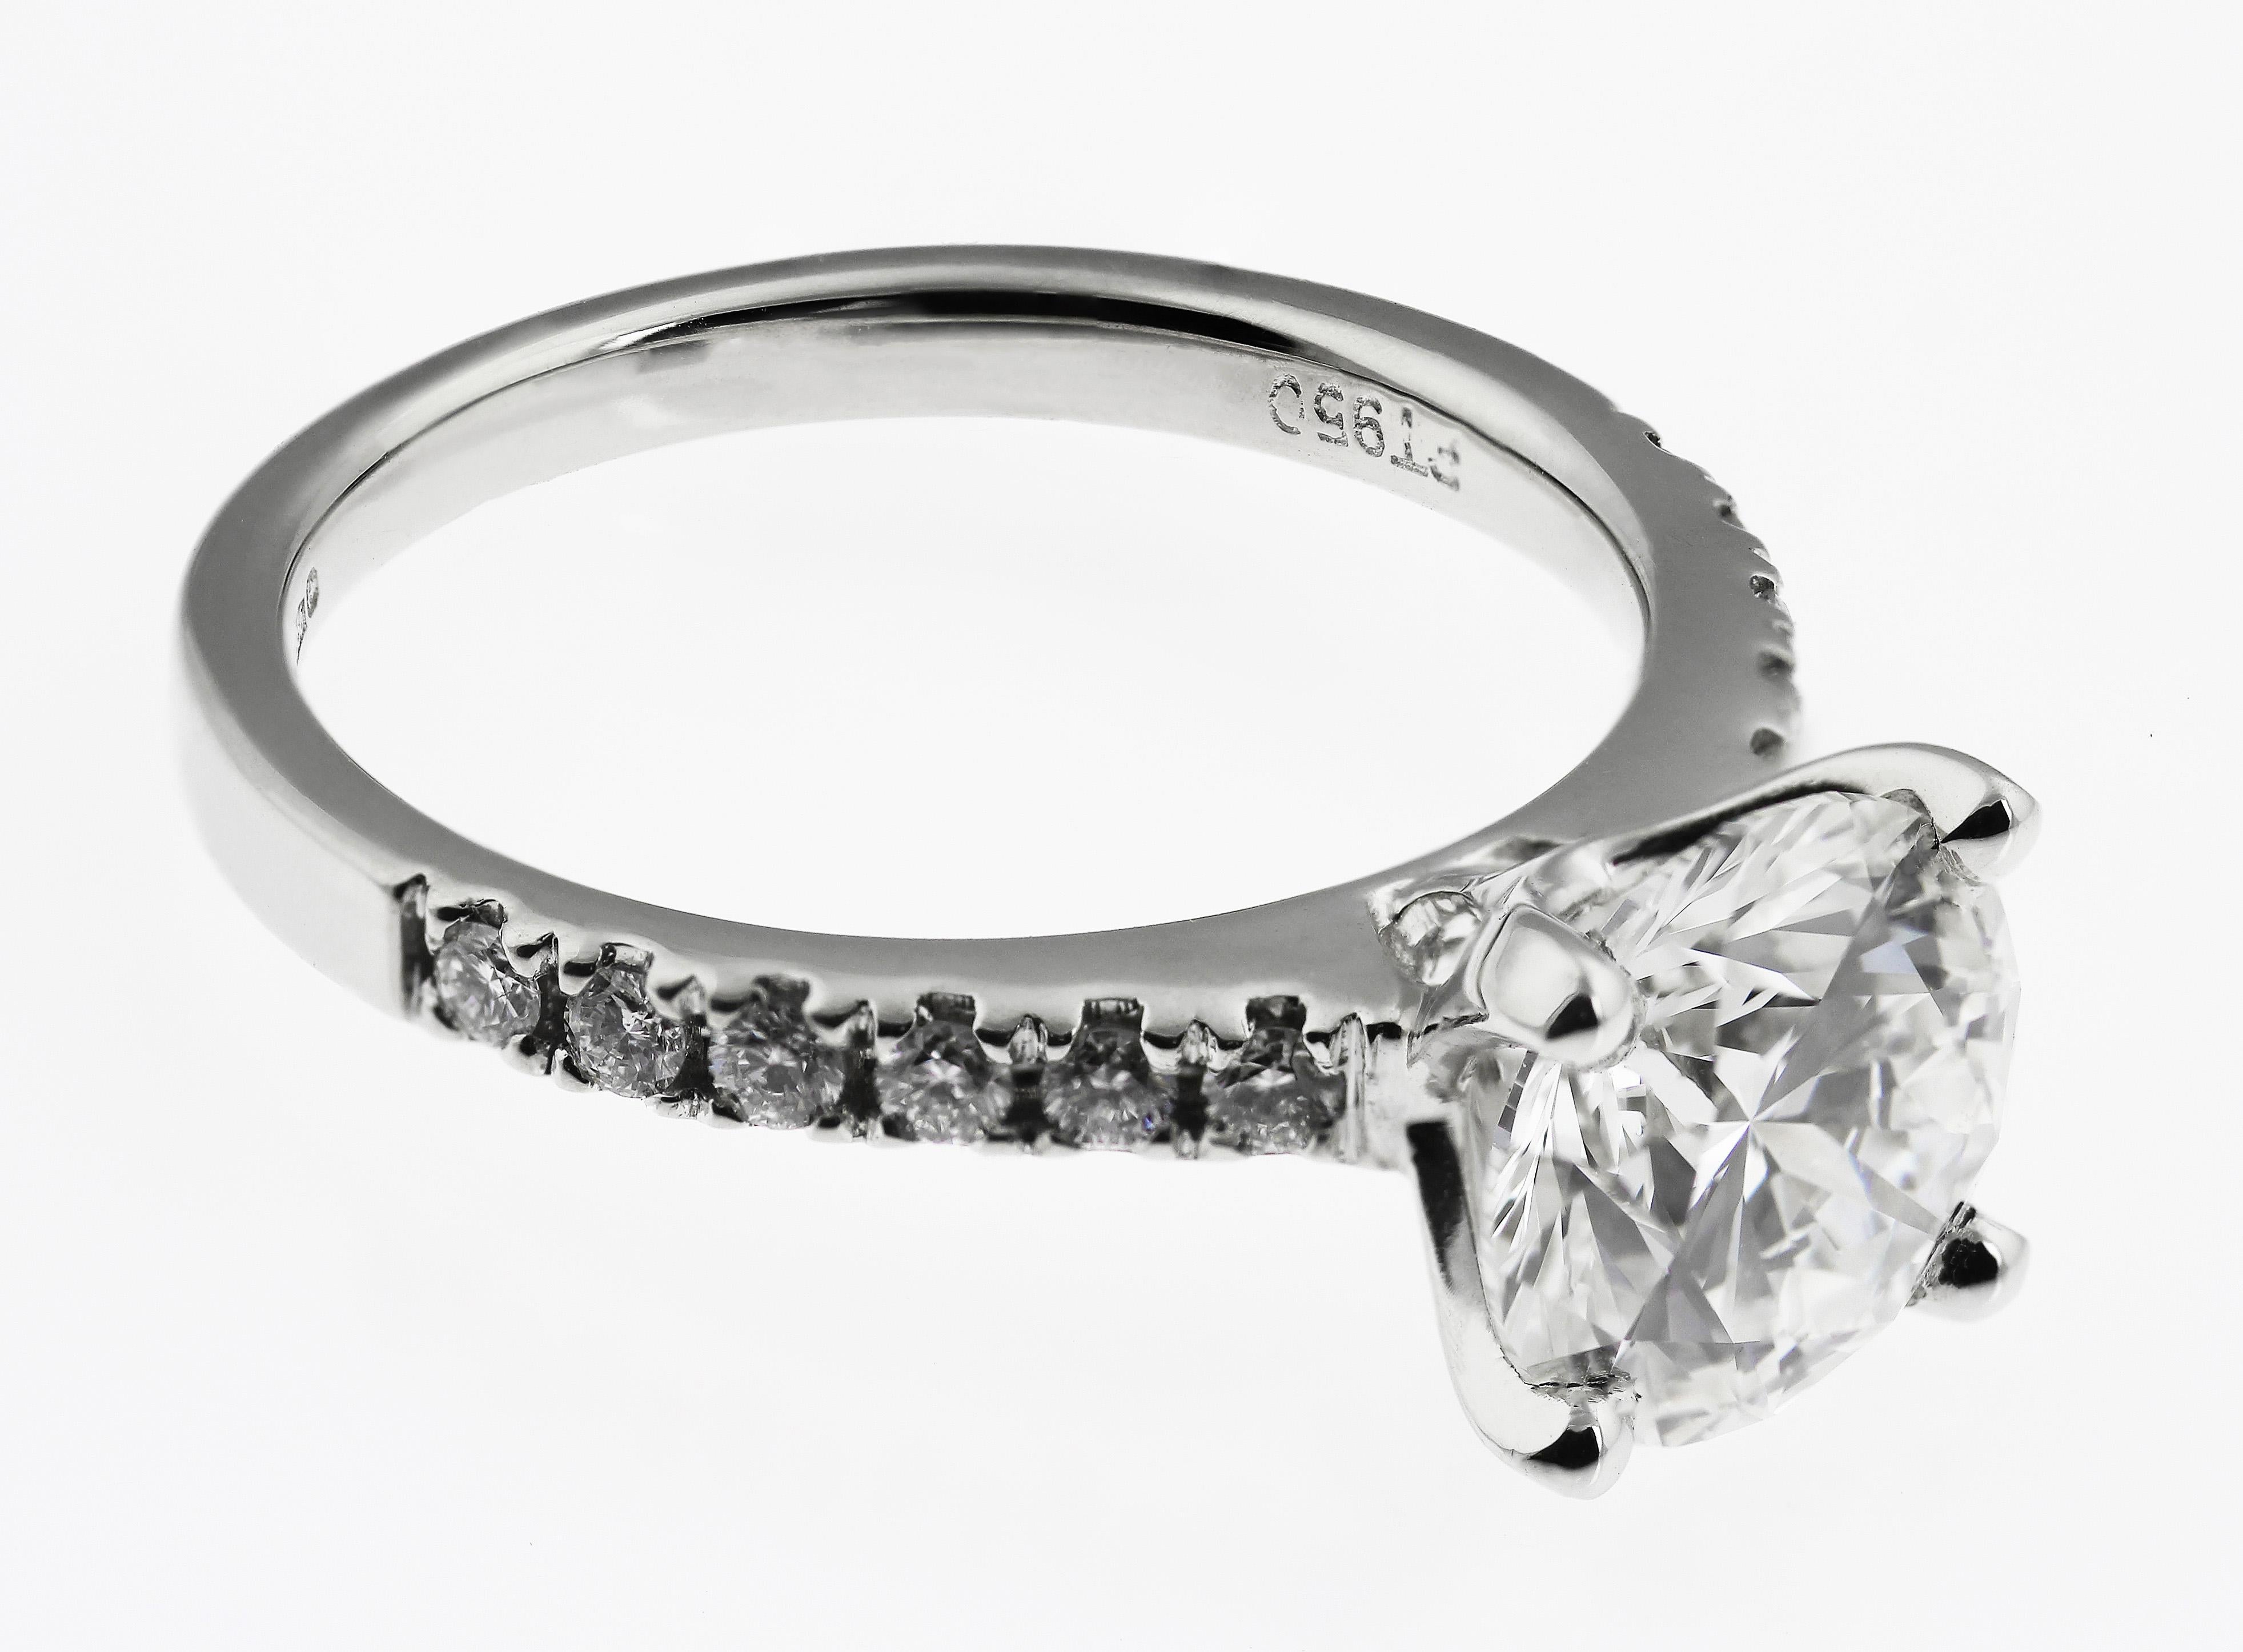 2.2 carat solitaire diamond ring